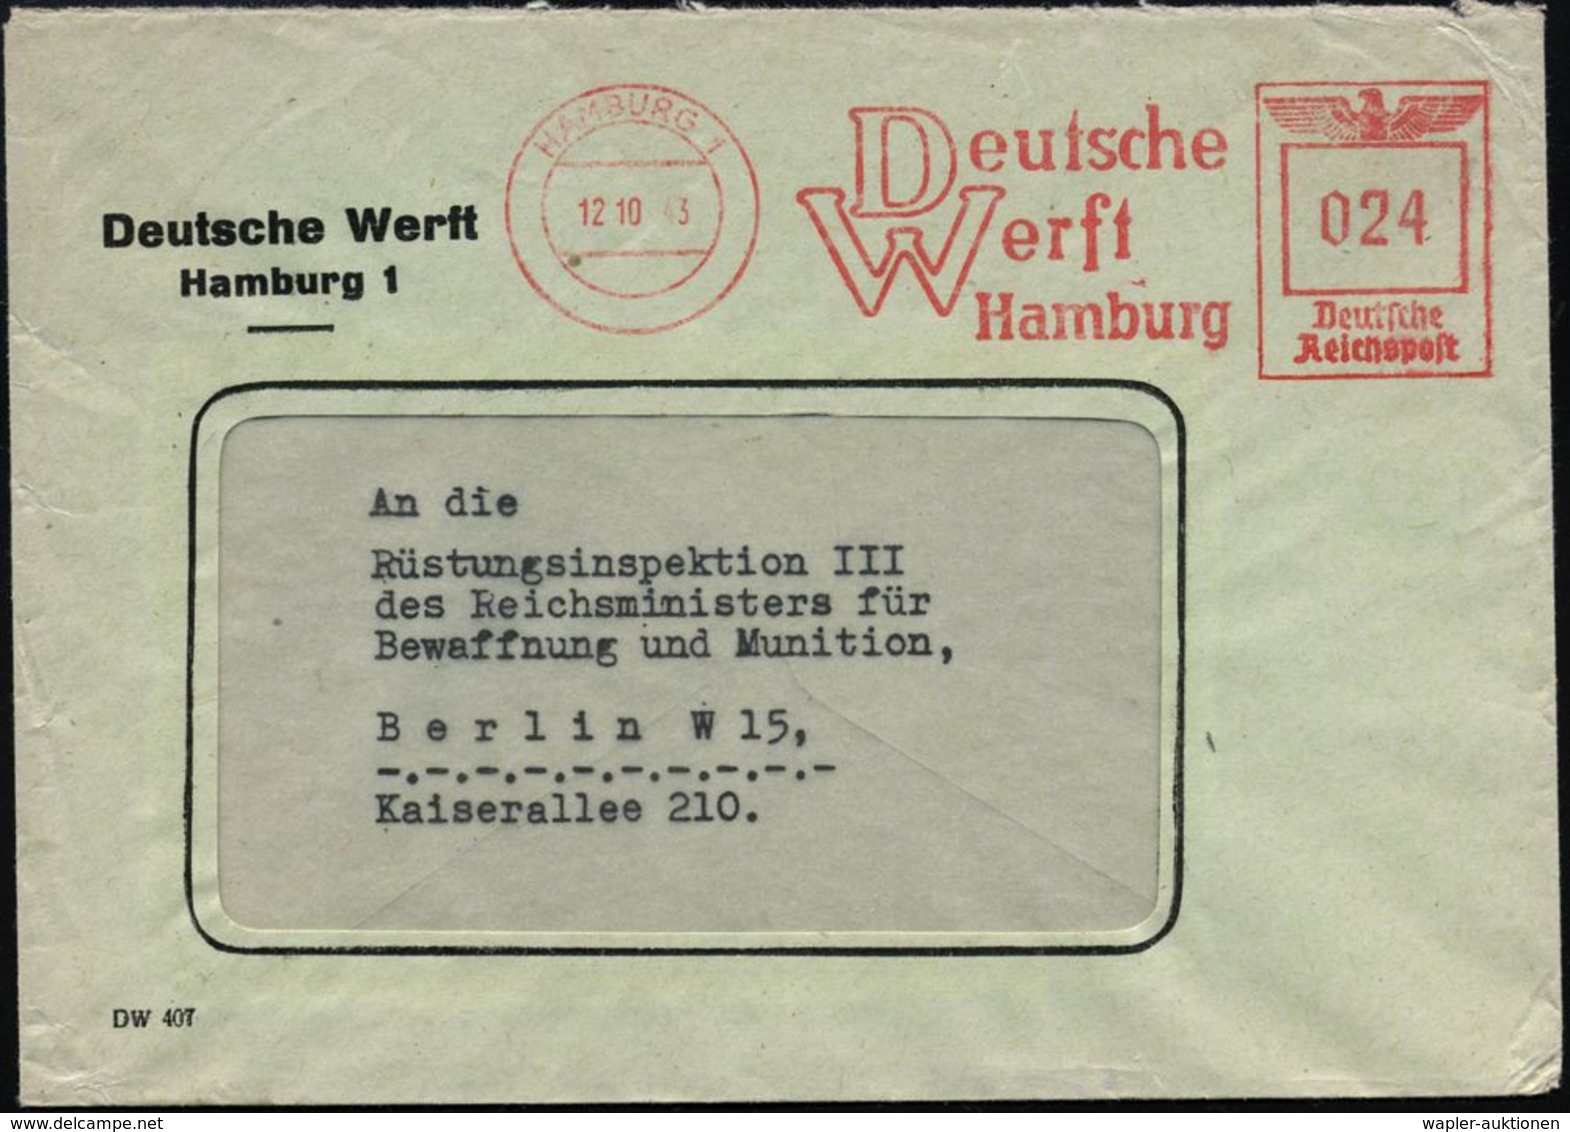 HAMBURG 1/ Deutsche/ Werft 1943 (16.10.) AFS Auf Firmen-Bf. = Kriegsschiffbau, Vor Allem U-Boote (Typen IX C, IX C/40, X - Maritime